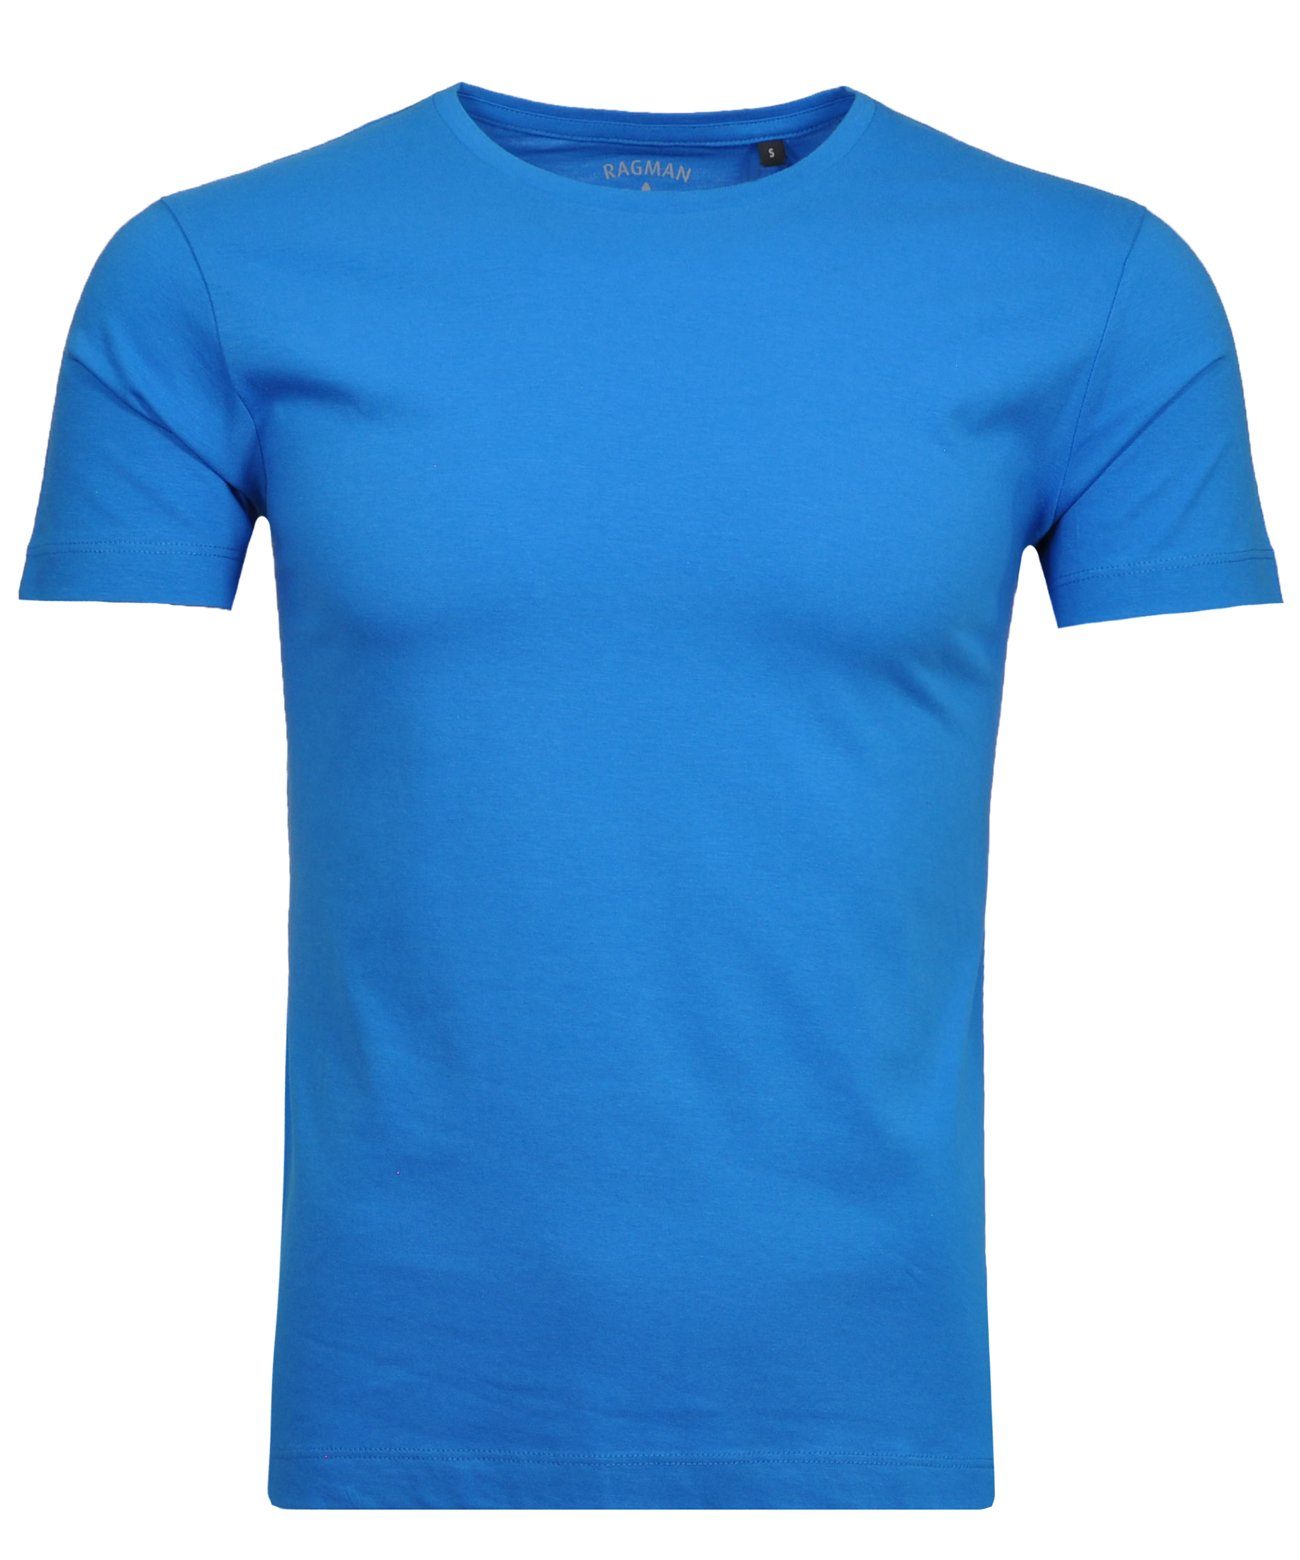 Blaugrau T-Shirt RAGMAN